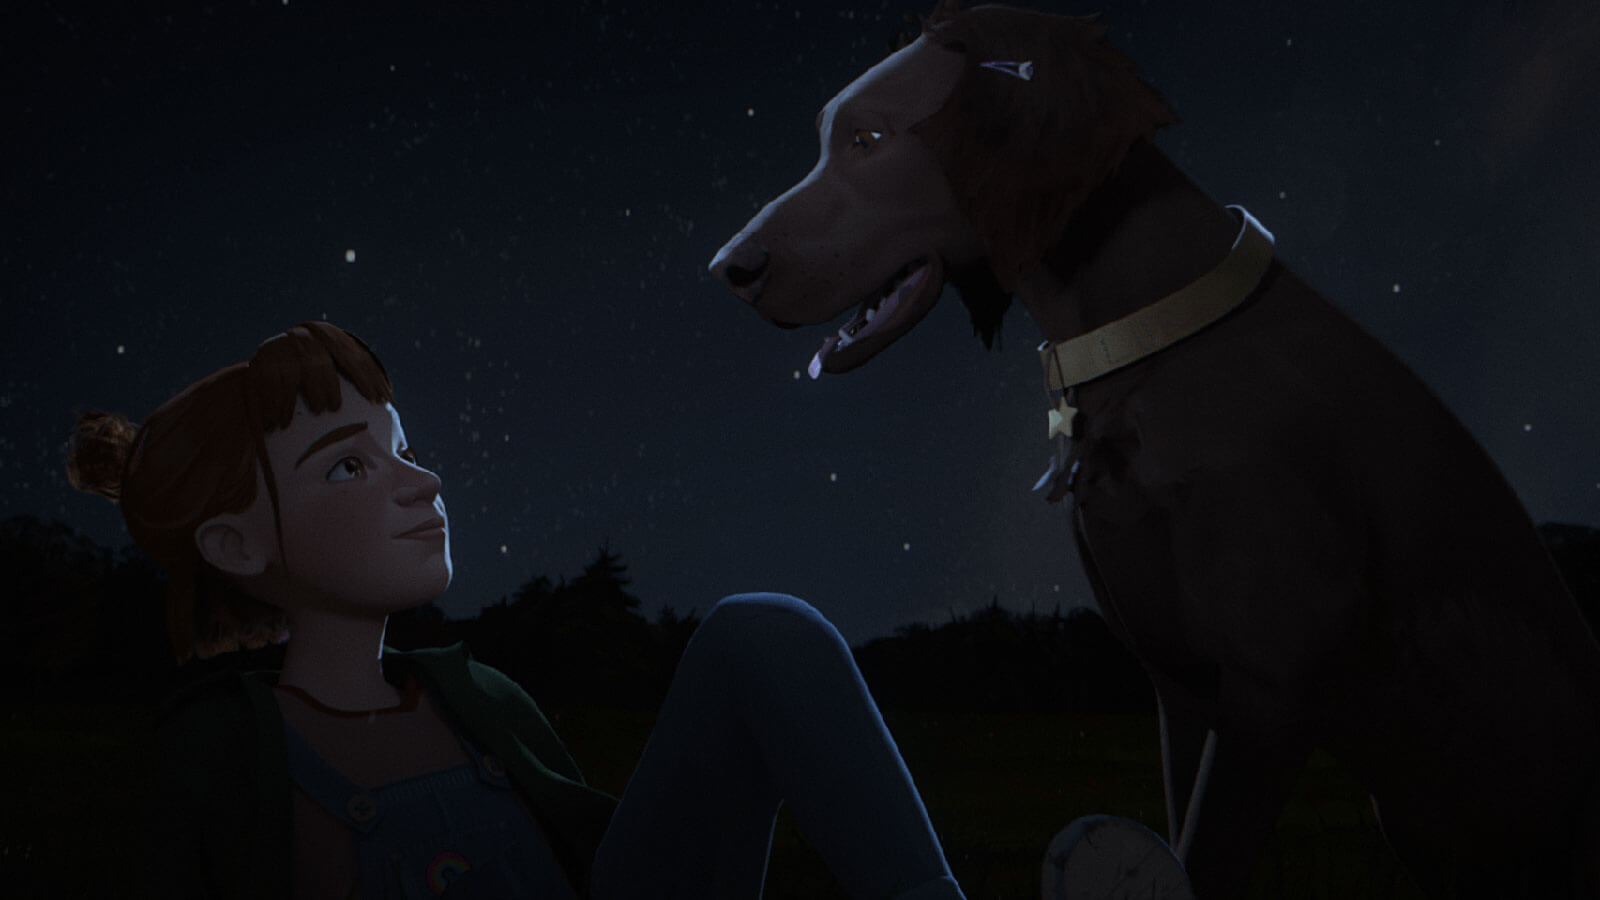 Una chica y un perro se miran fijamente bajo el cielo nocturno en una explanada, rodeados de estrellas.